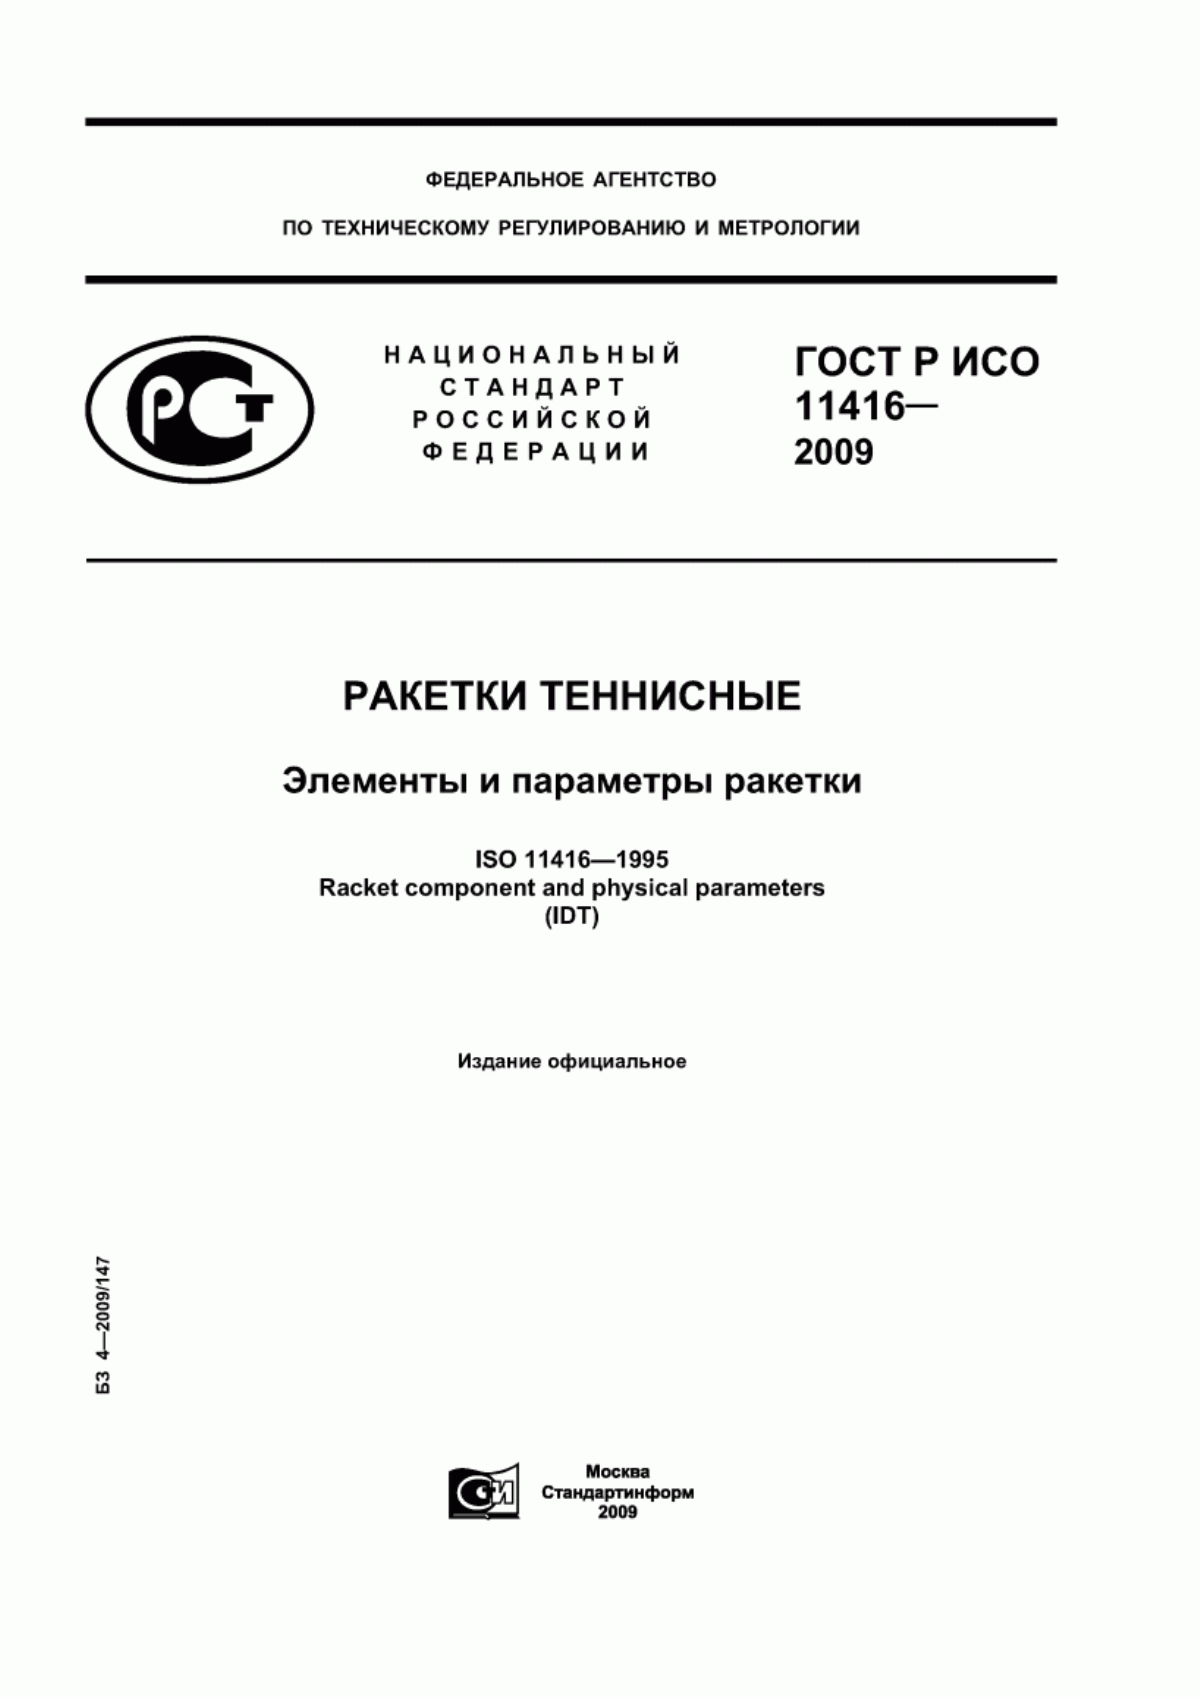 ГОСТ Р ИСО 11416-2009 Ракетки теннисные. Элементы и параметры ракетки